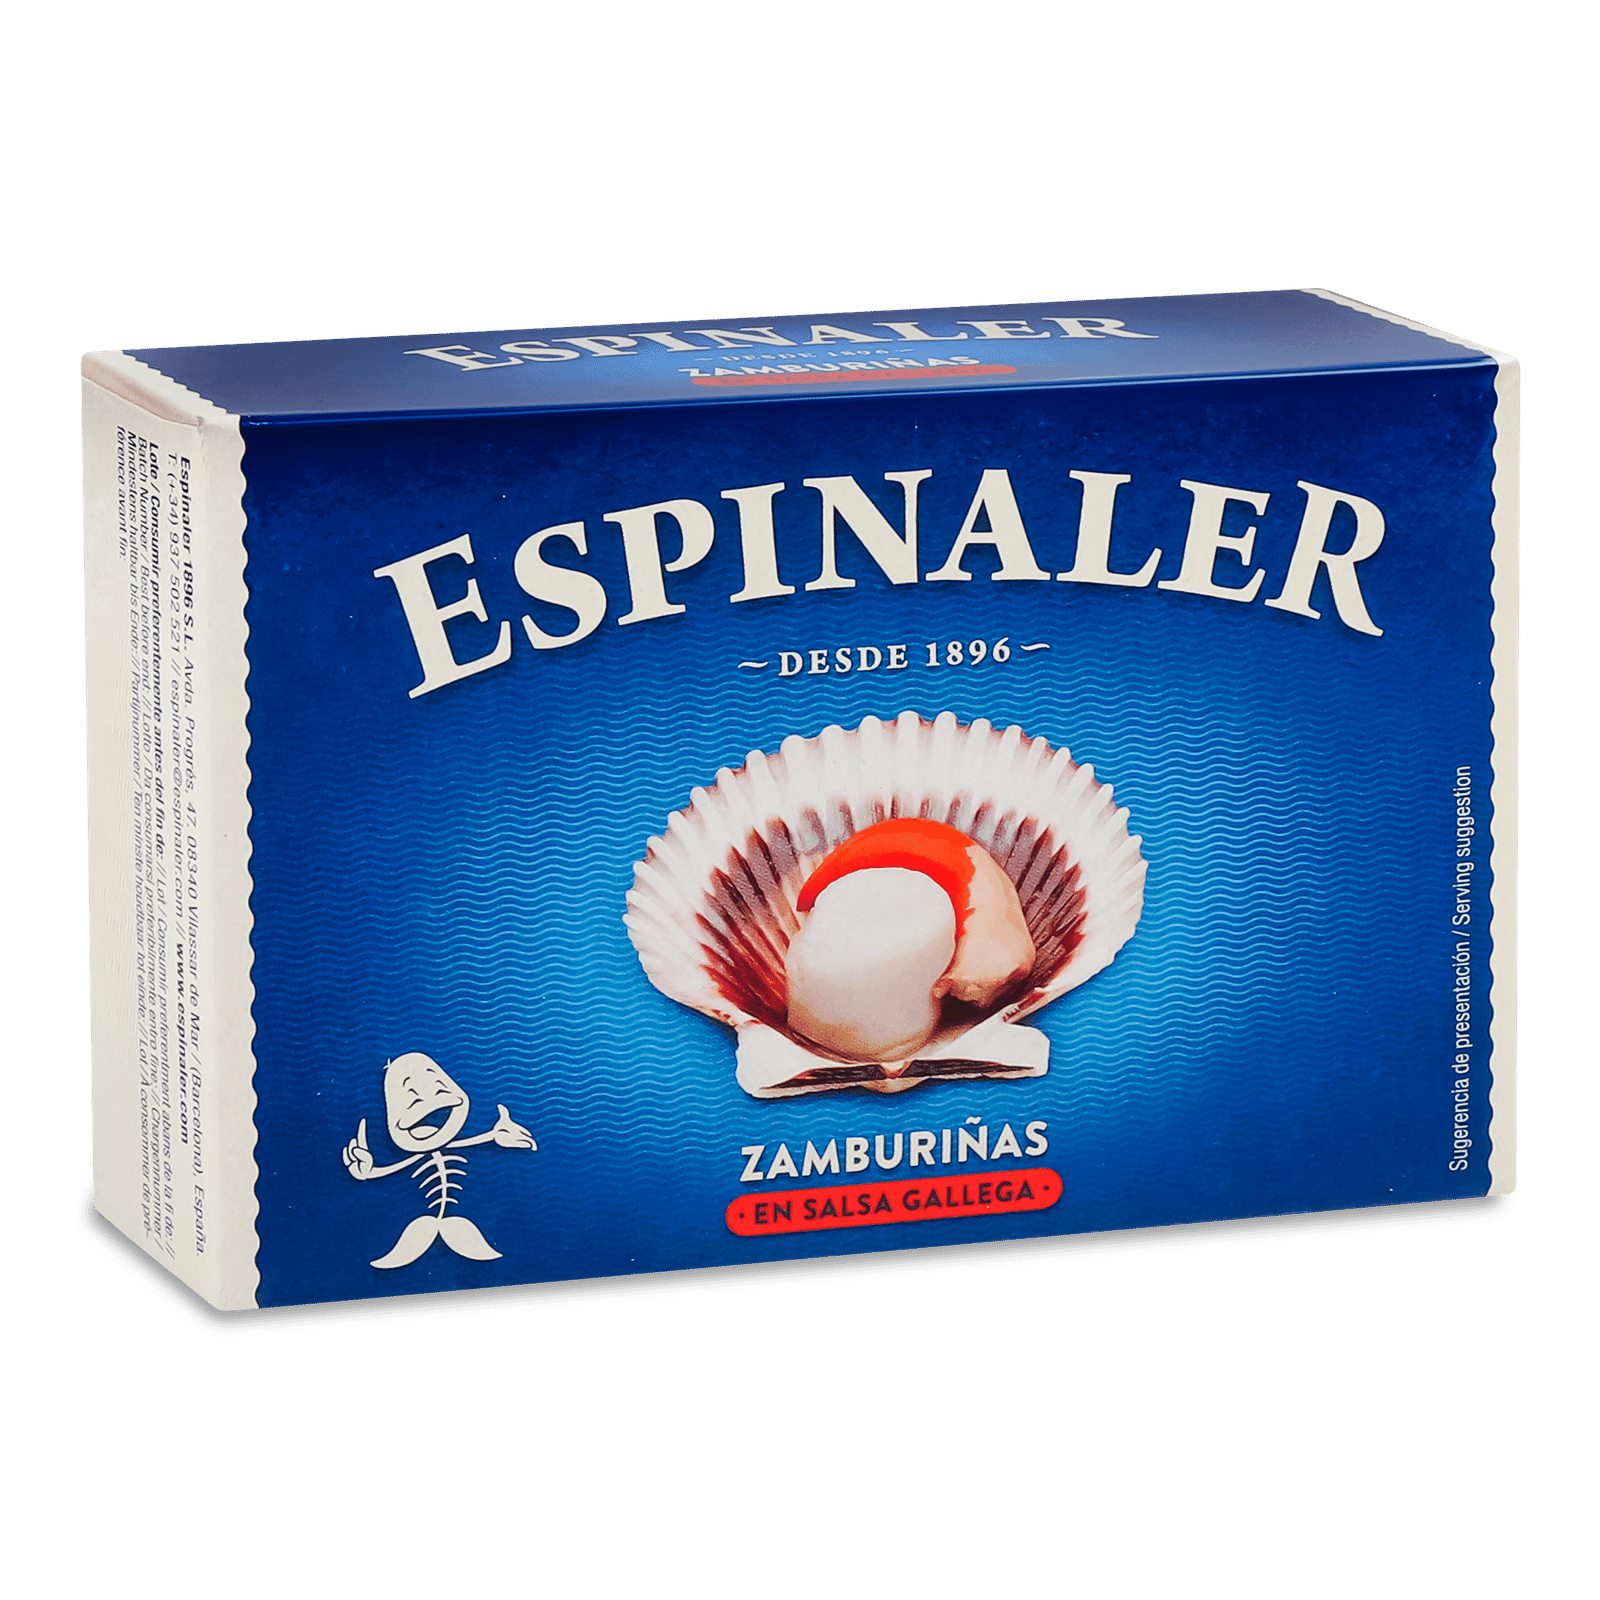 Гребінці Espinaler в галицькому соусі - 1